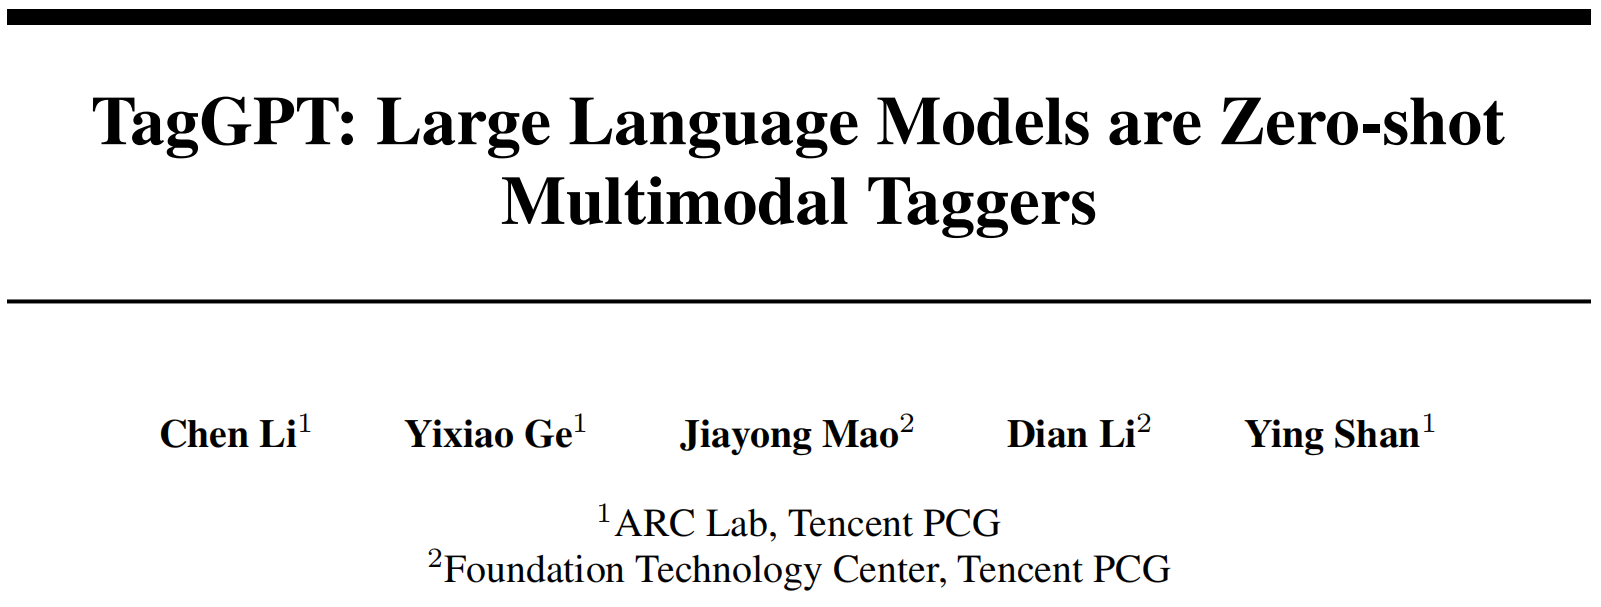 腾讯：零样本多模态标签的大语言模型TagGPT